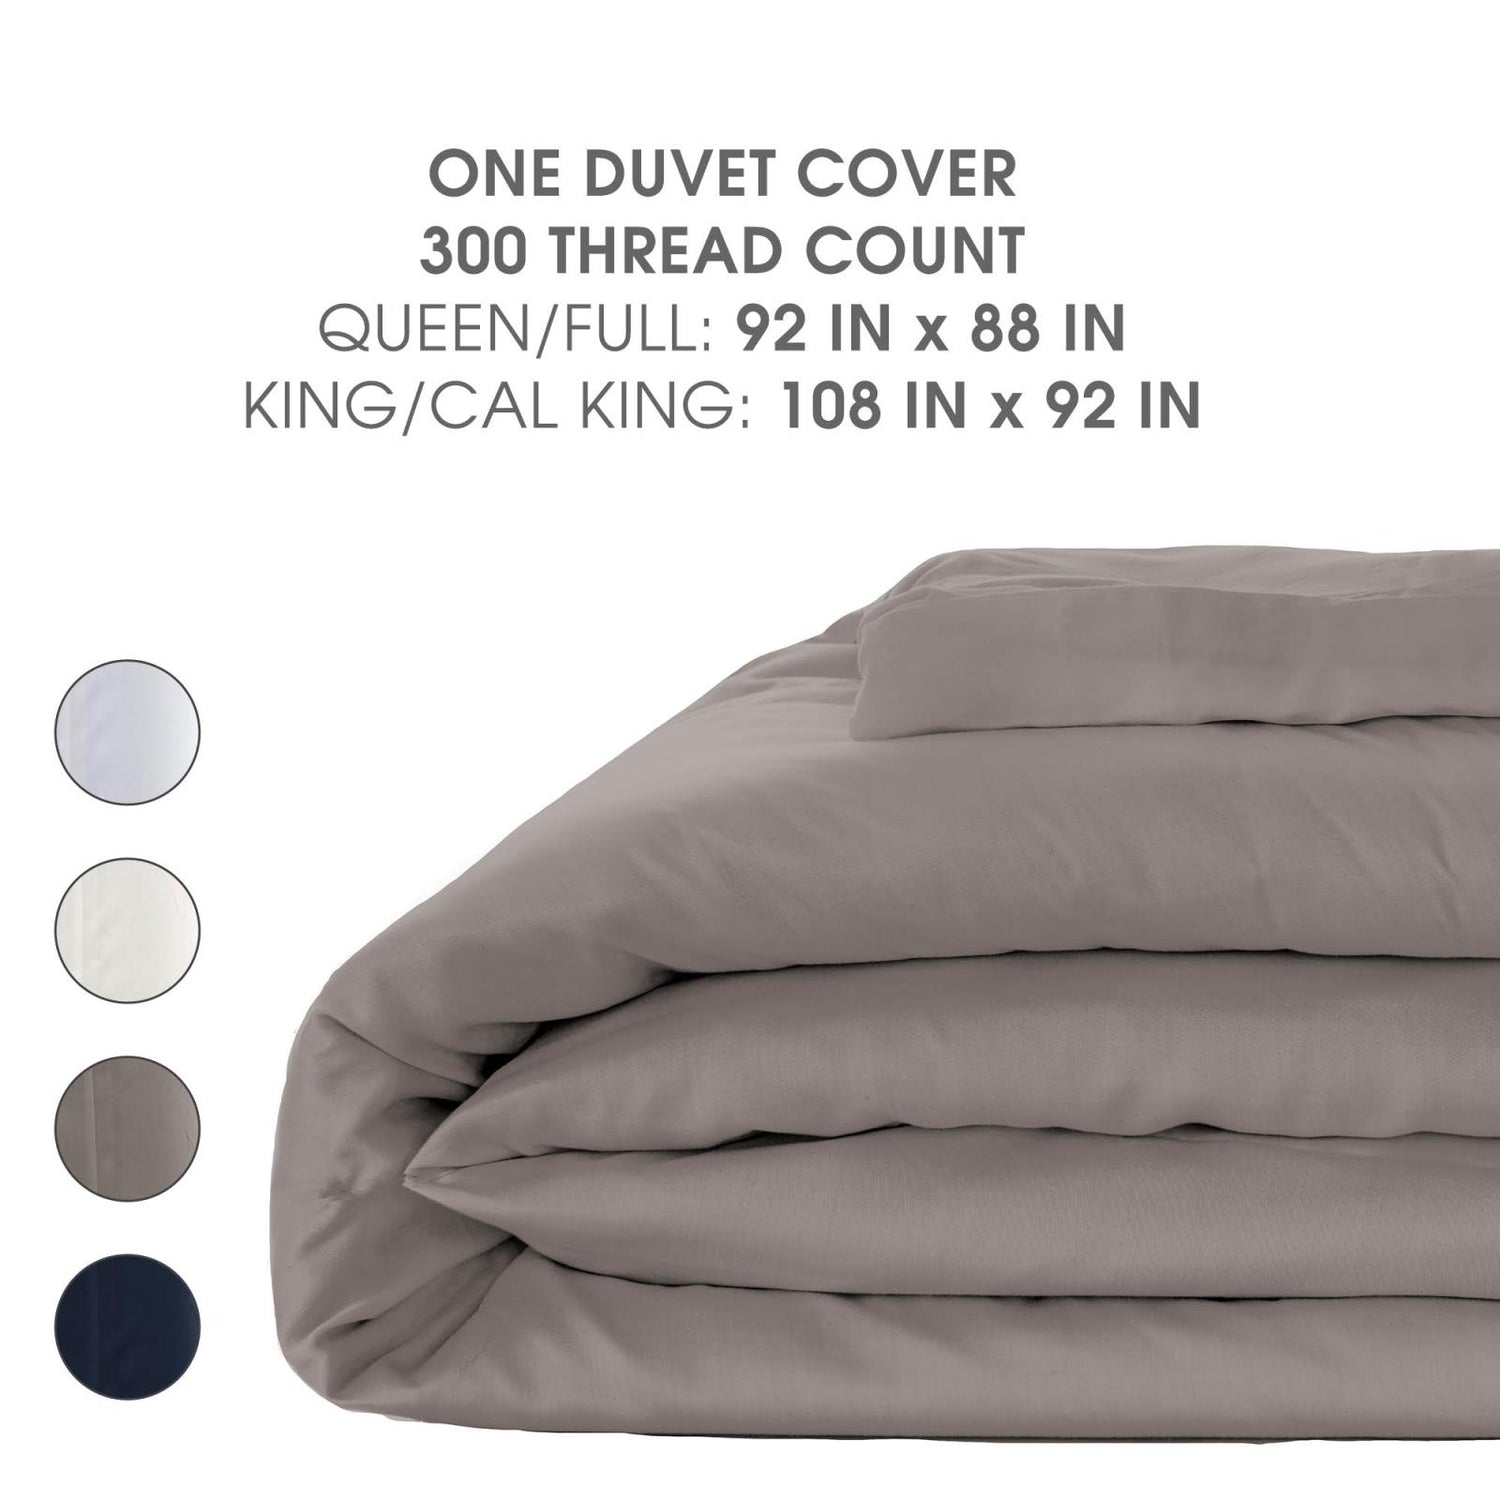 Woven Duvet Cover in Hazelnut